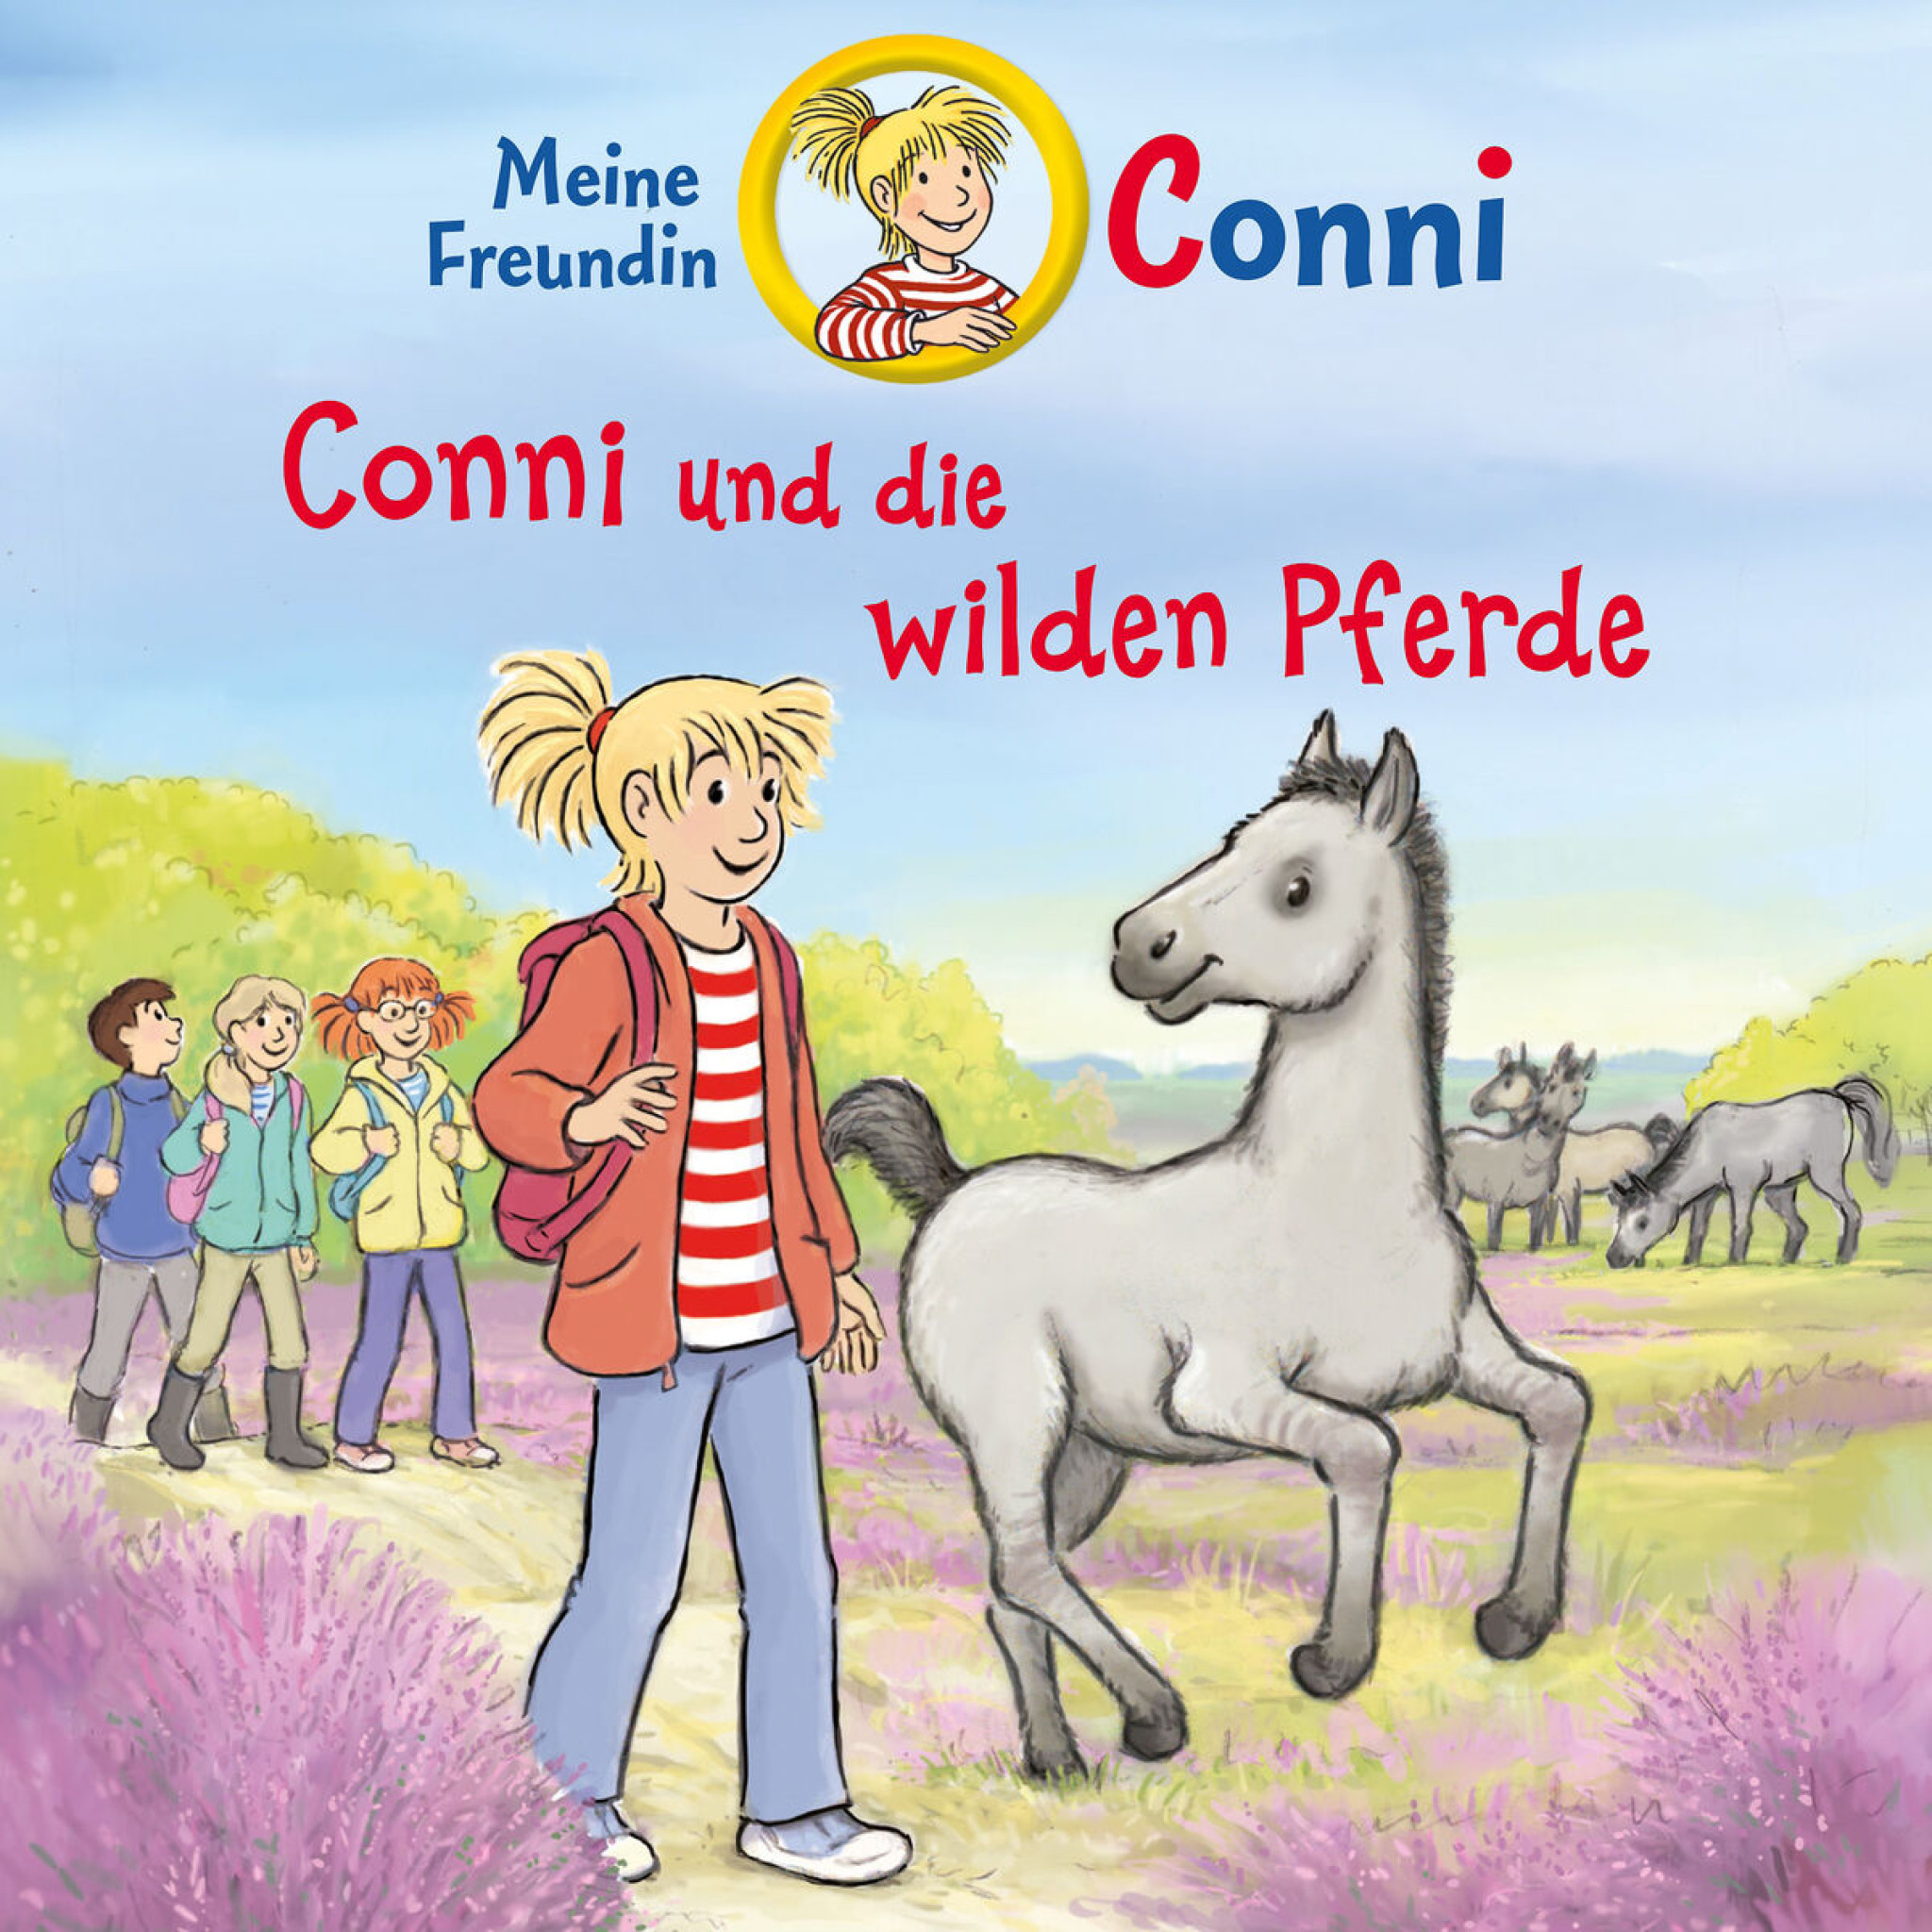 73: Conni und die wilden Pferde